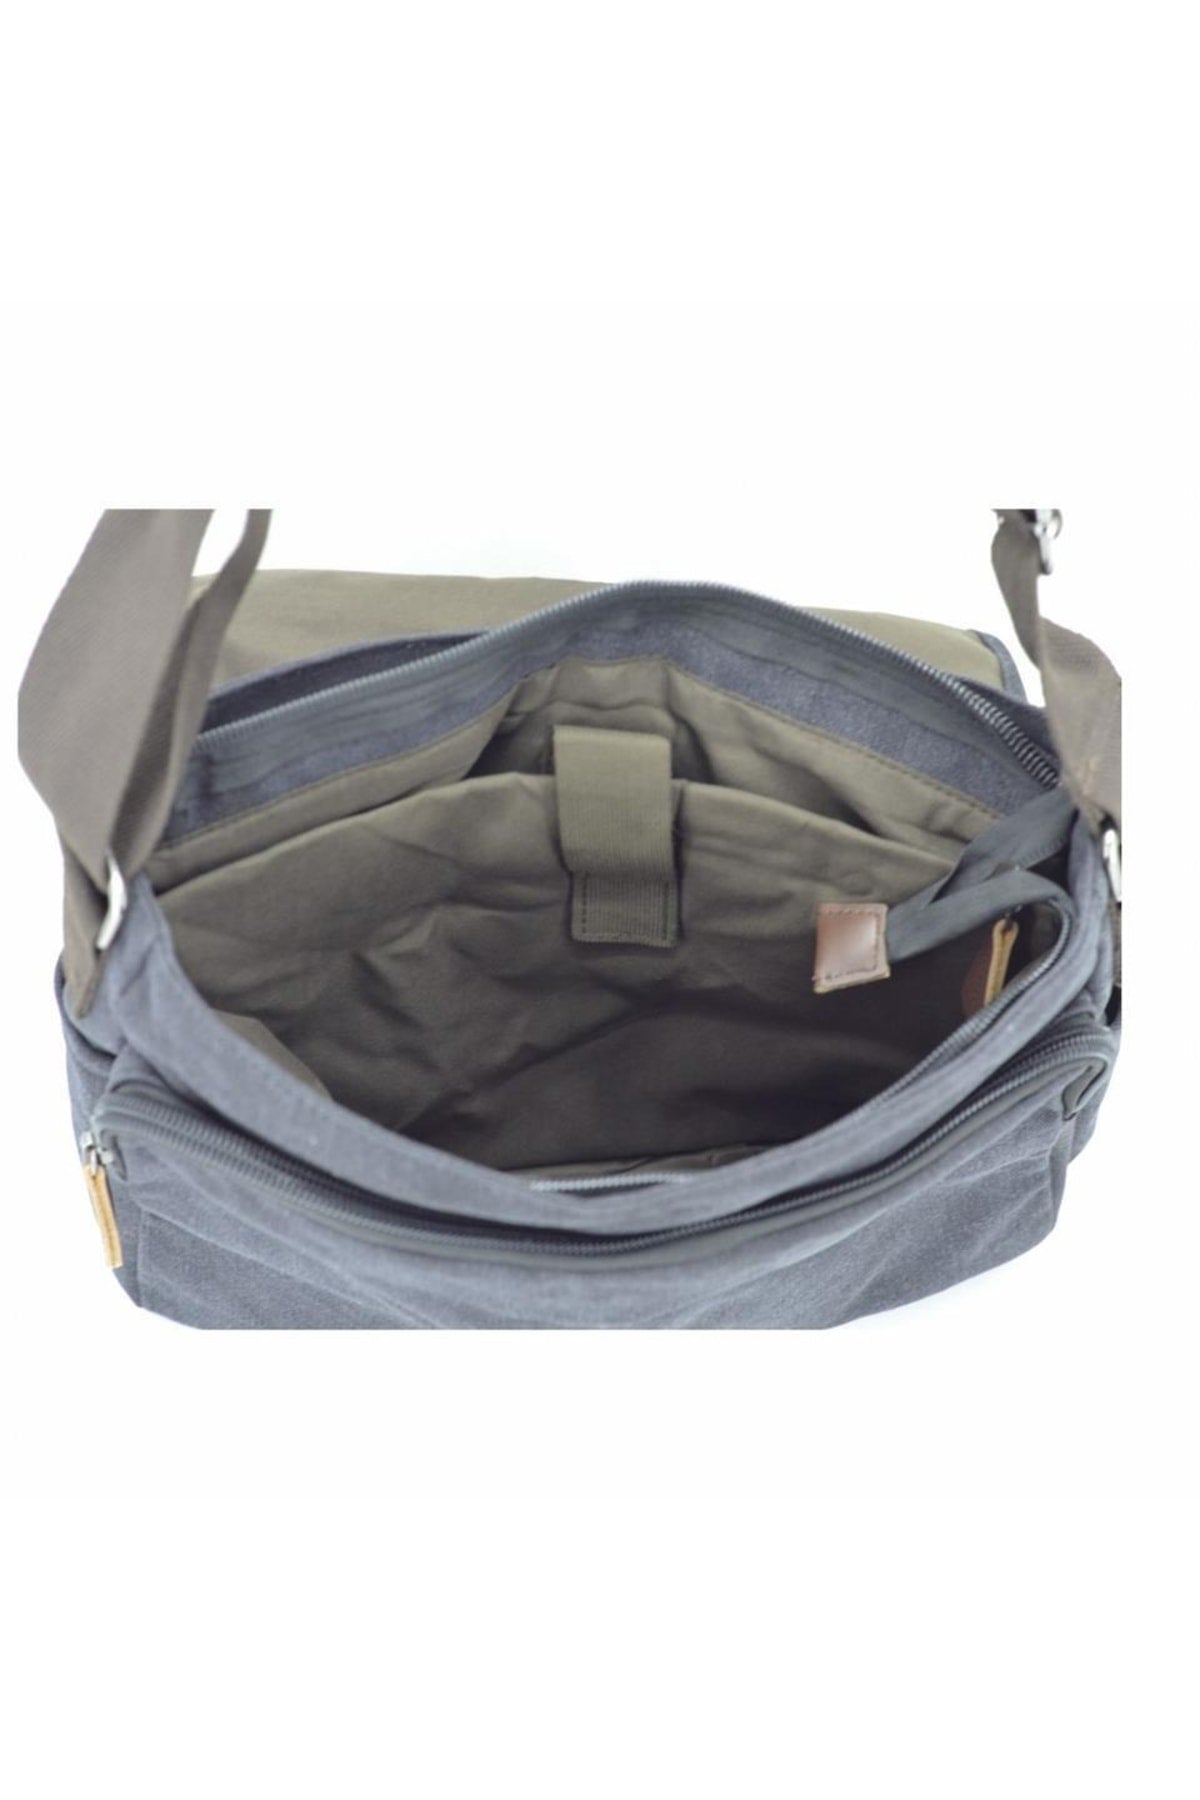 31325 Shoulder Strap Messenger Bag Laptop And Briefcase Black